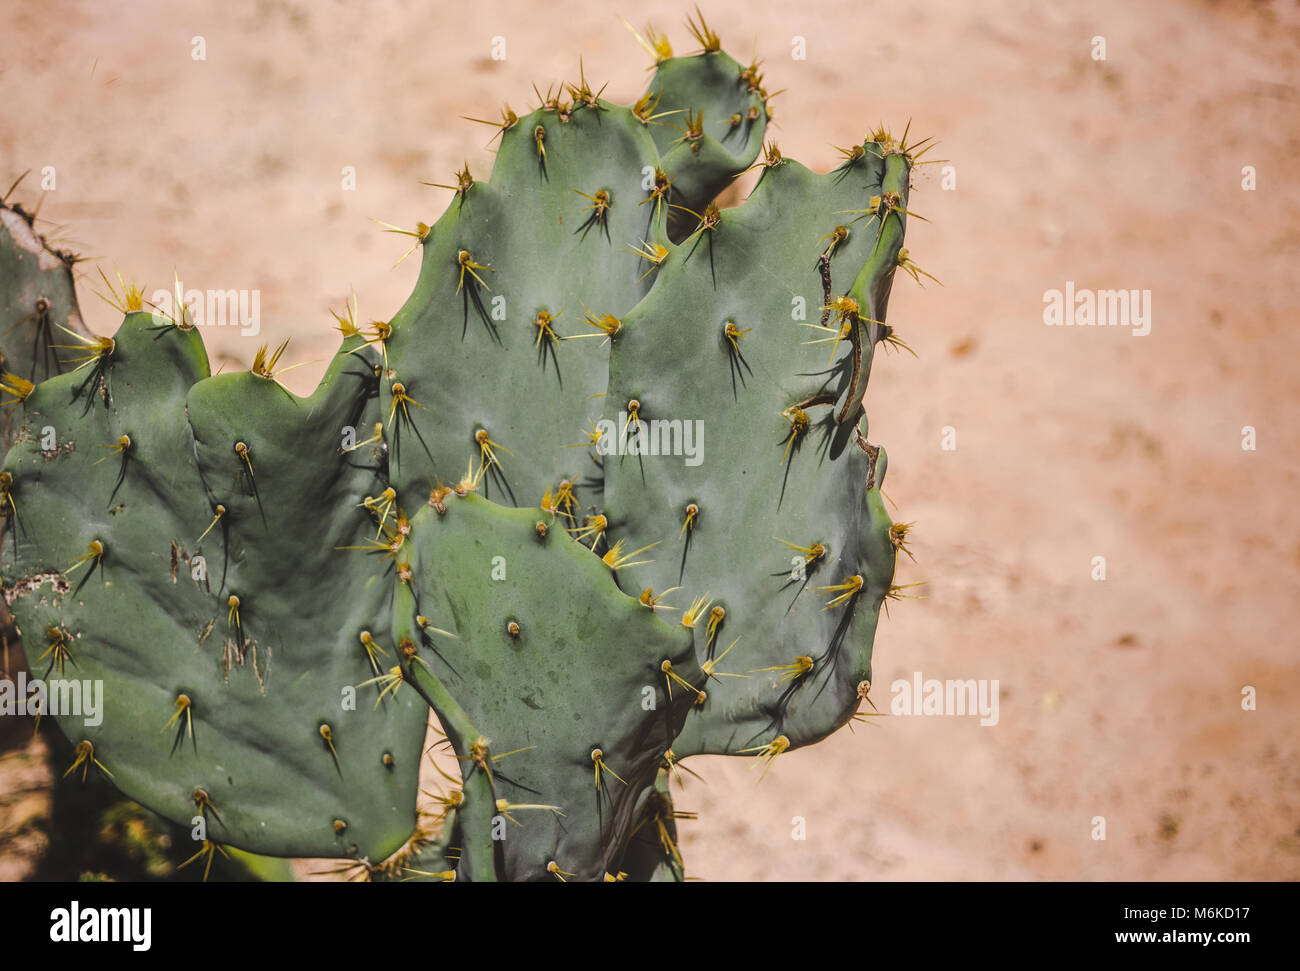 Grünen Kaktus mit gelben Stacheln in der Wüste Stockfoto